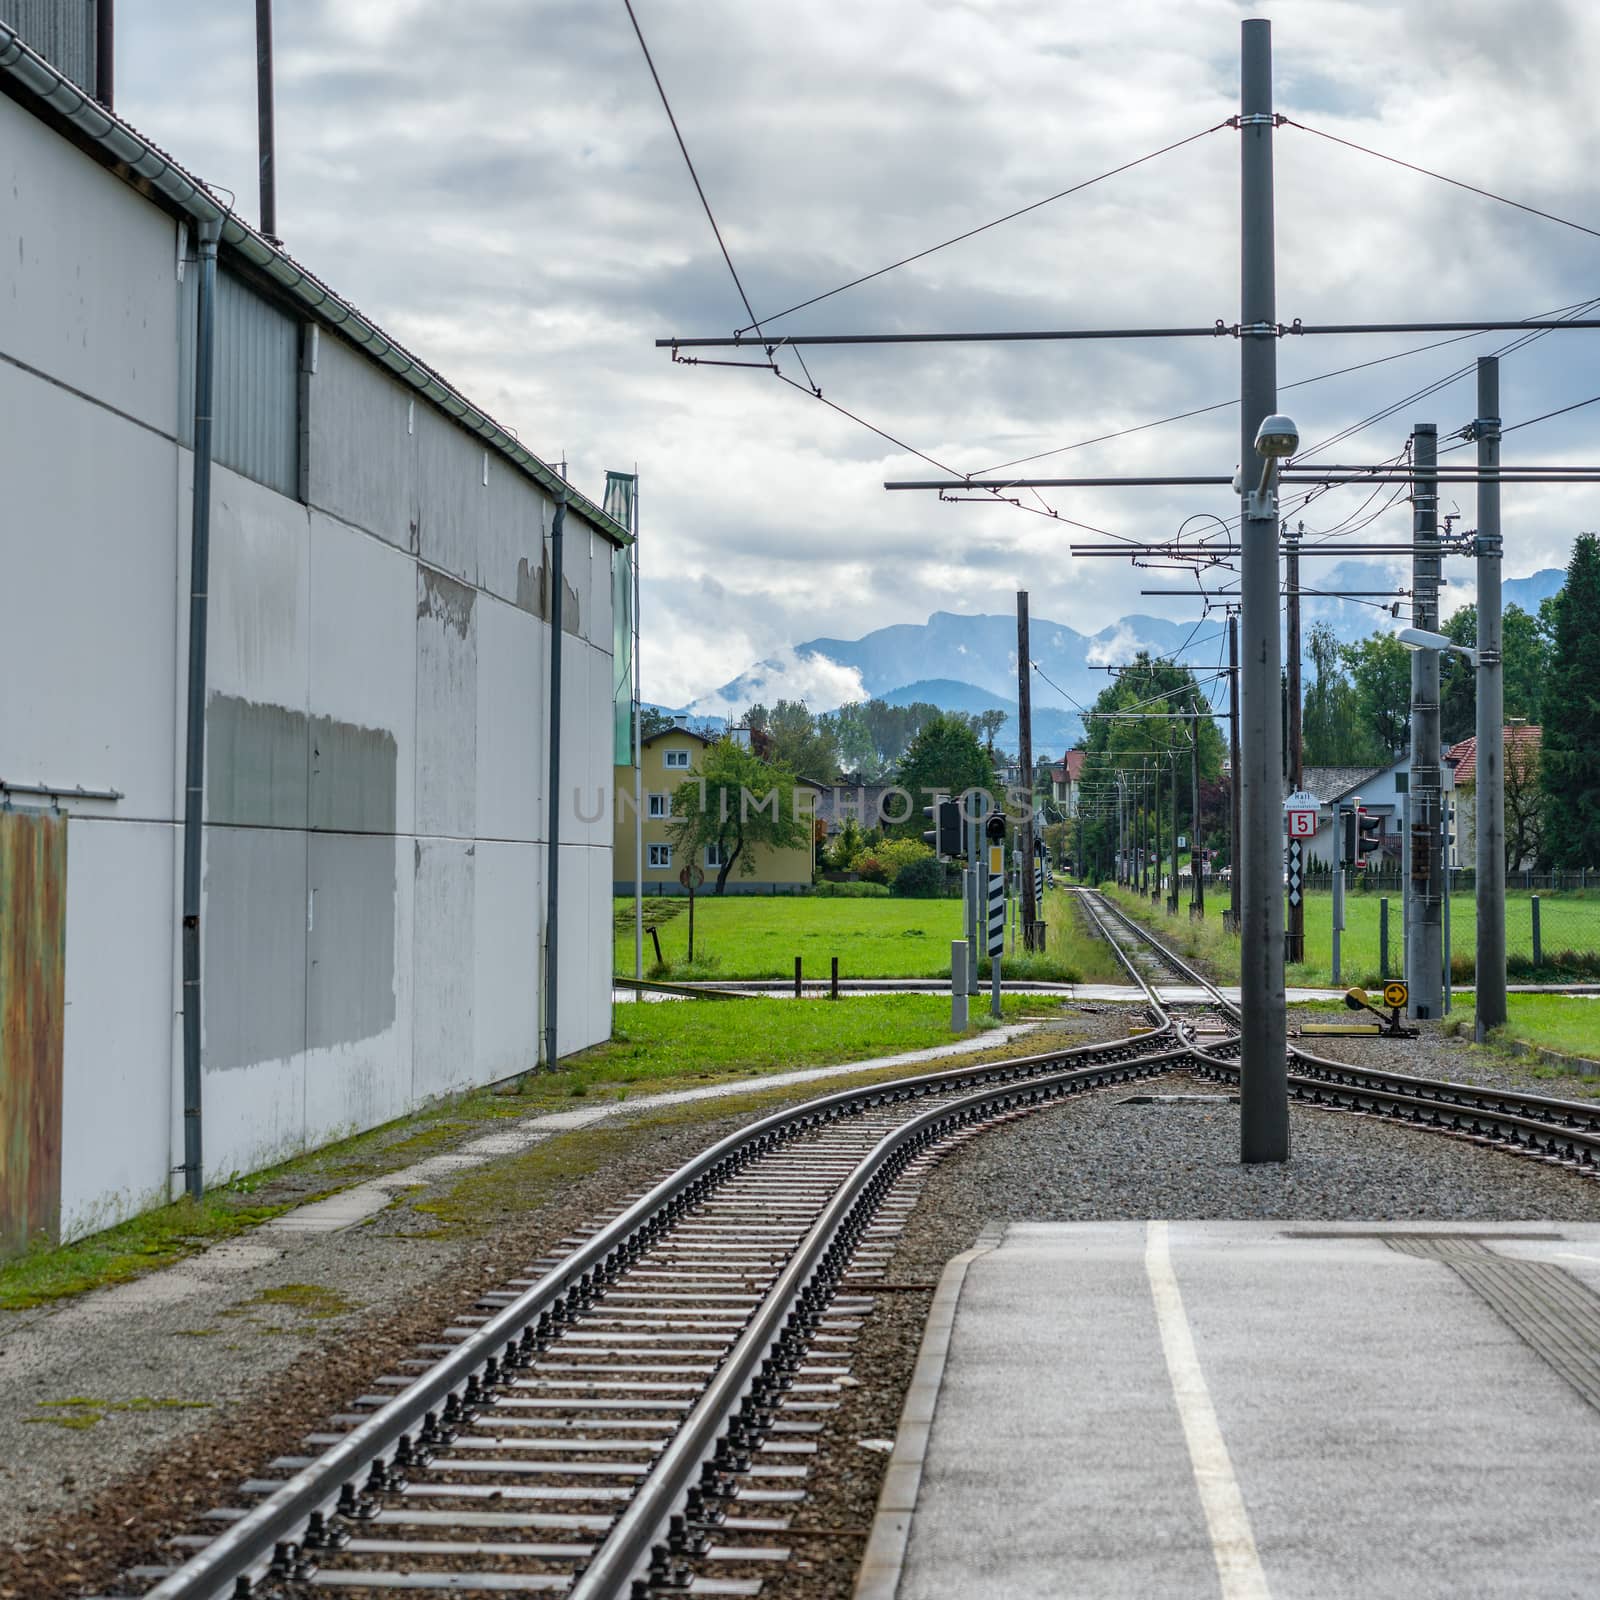 Railway Line at St Georgen im Attergau by phil_bird